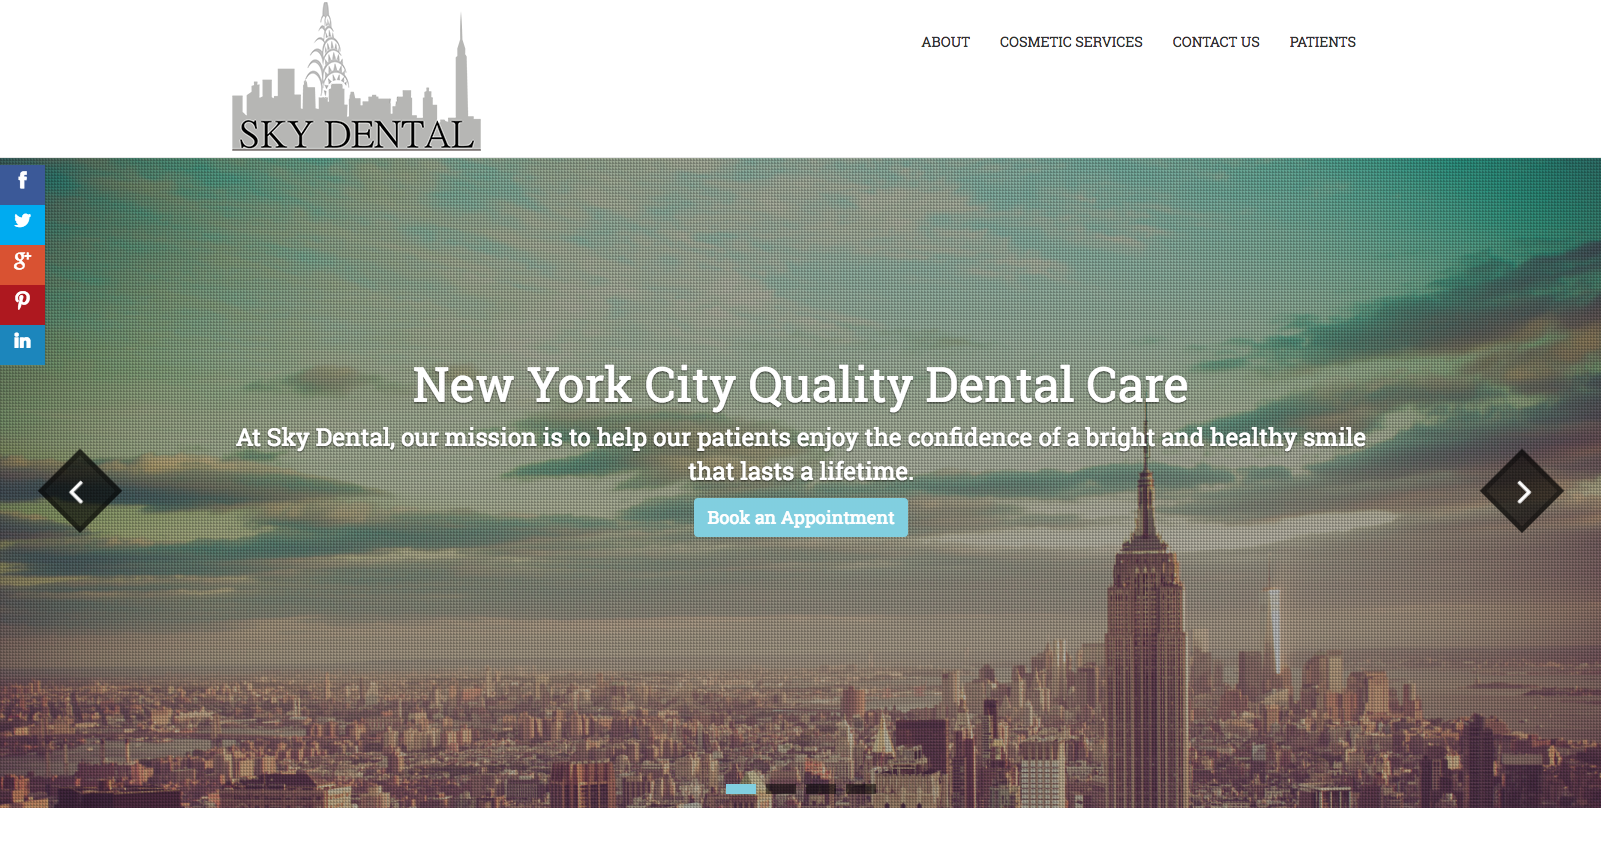 Sky Dental NYC